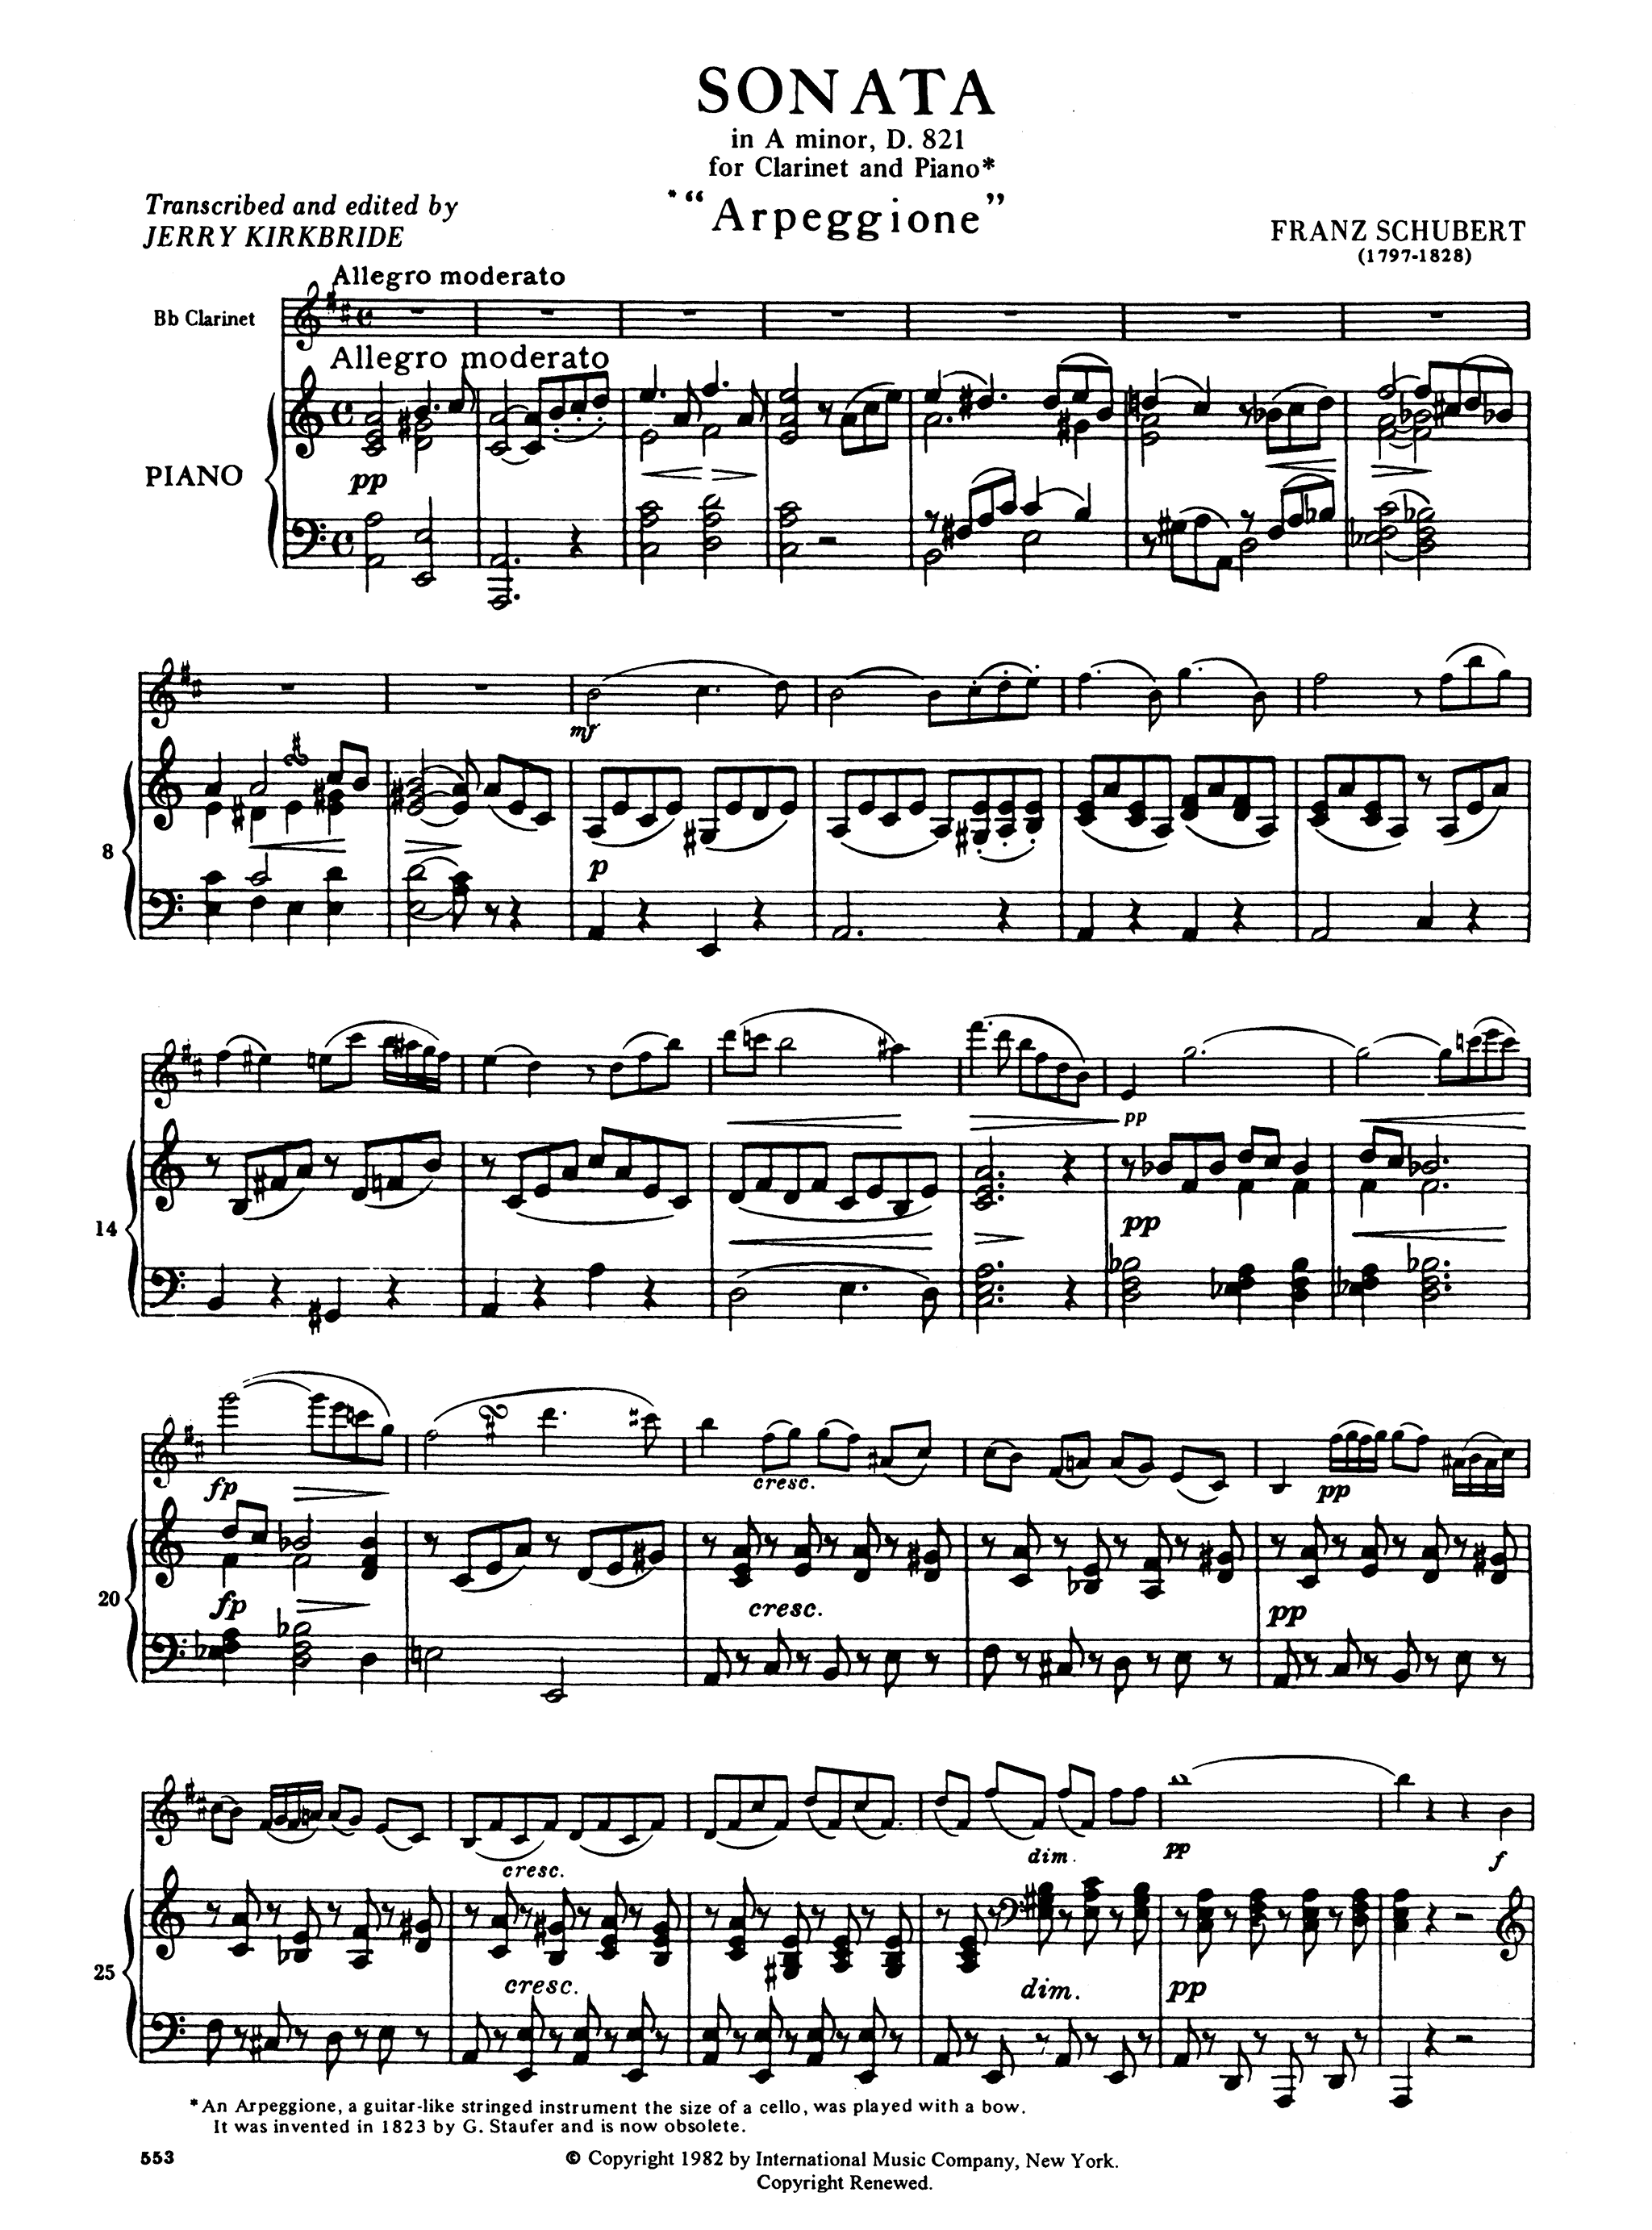 Sonata in A Minor, D. 821 ‘Arpeggione’ - Movement 1